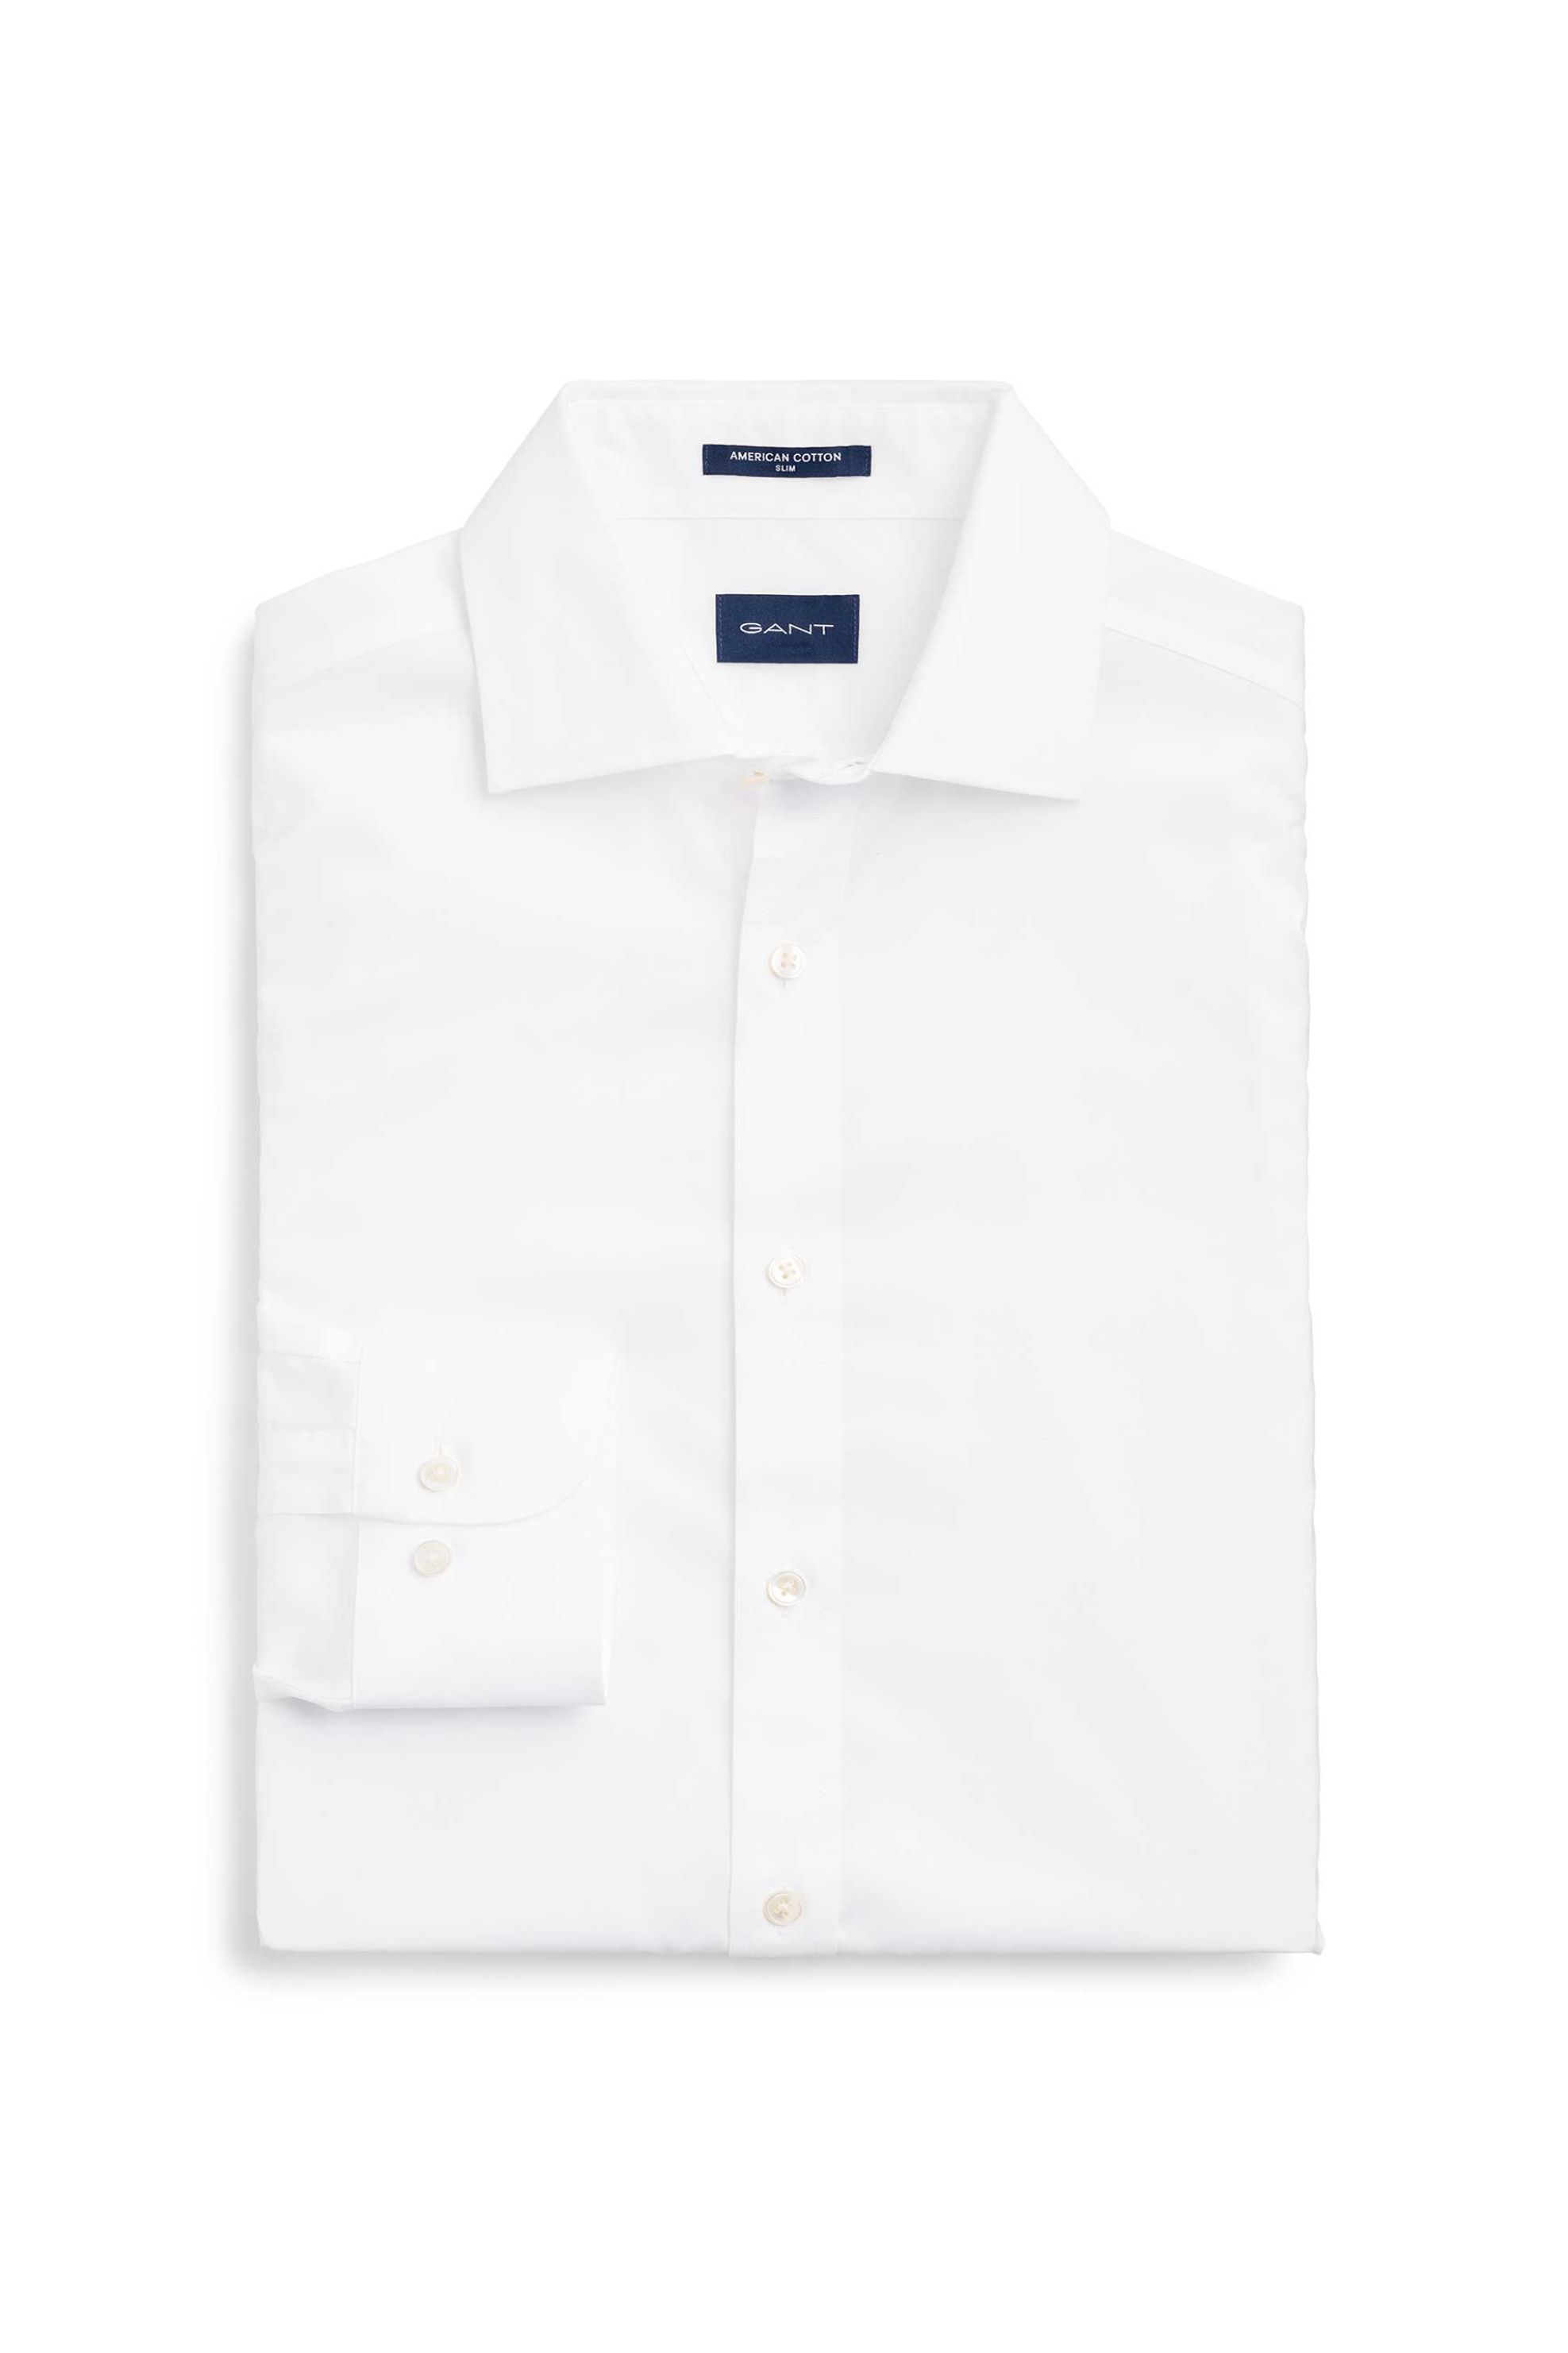 Ανδρική Μόδα > Ανδρικά Ρούχα > Ανδρικά Πουκάμισα > Ανδρικά Πουκάμισα Επίσημα & Βραδινά Gant ανδρικό πουκάμισο μονόχρωμο Slim Fit - 3053006 Λευκό